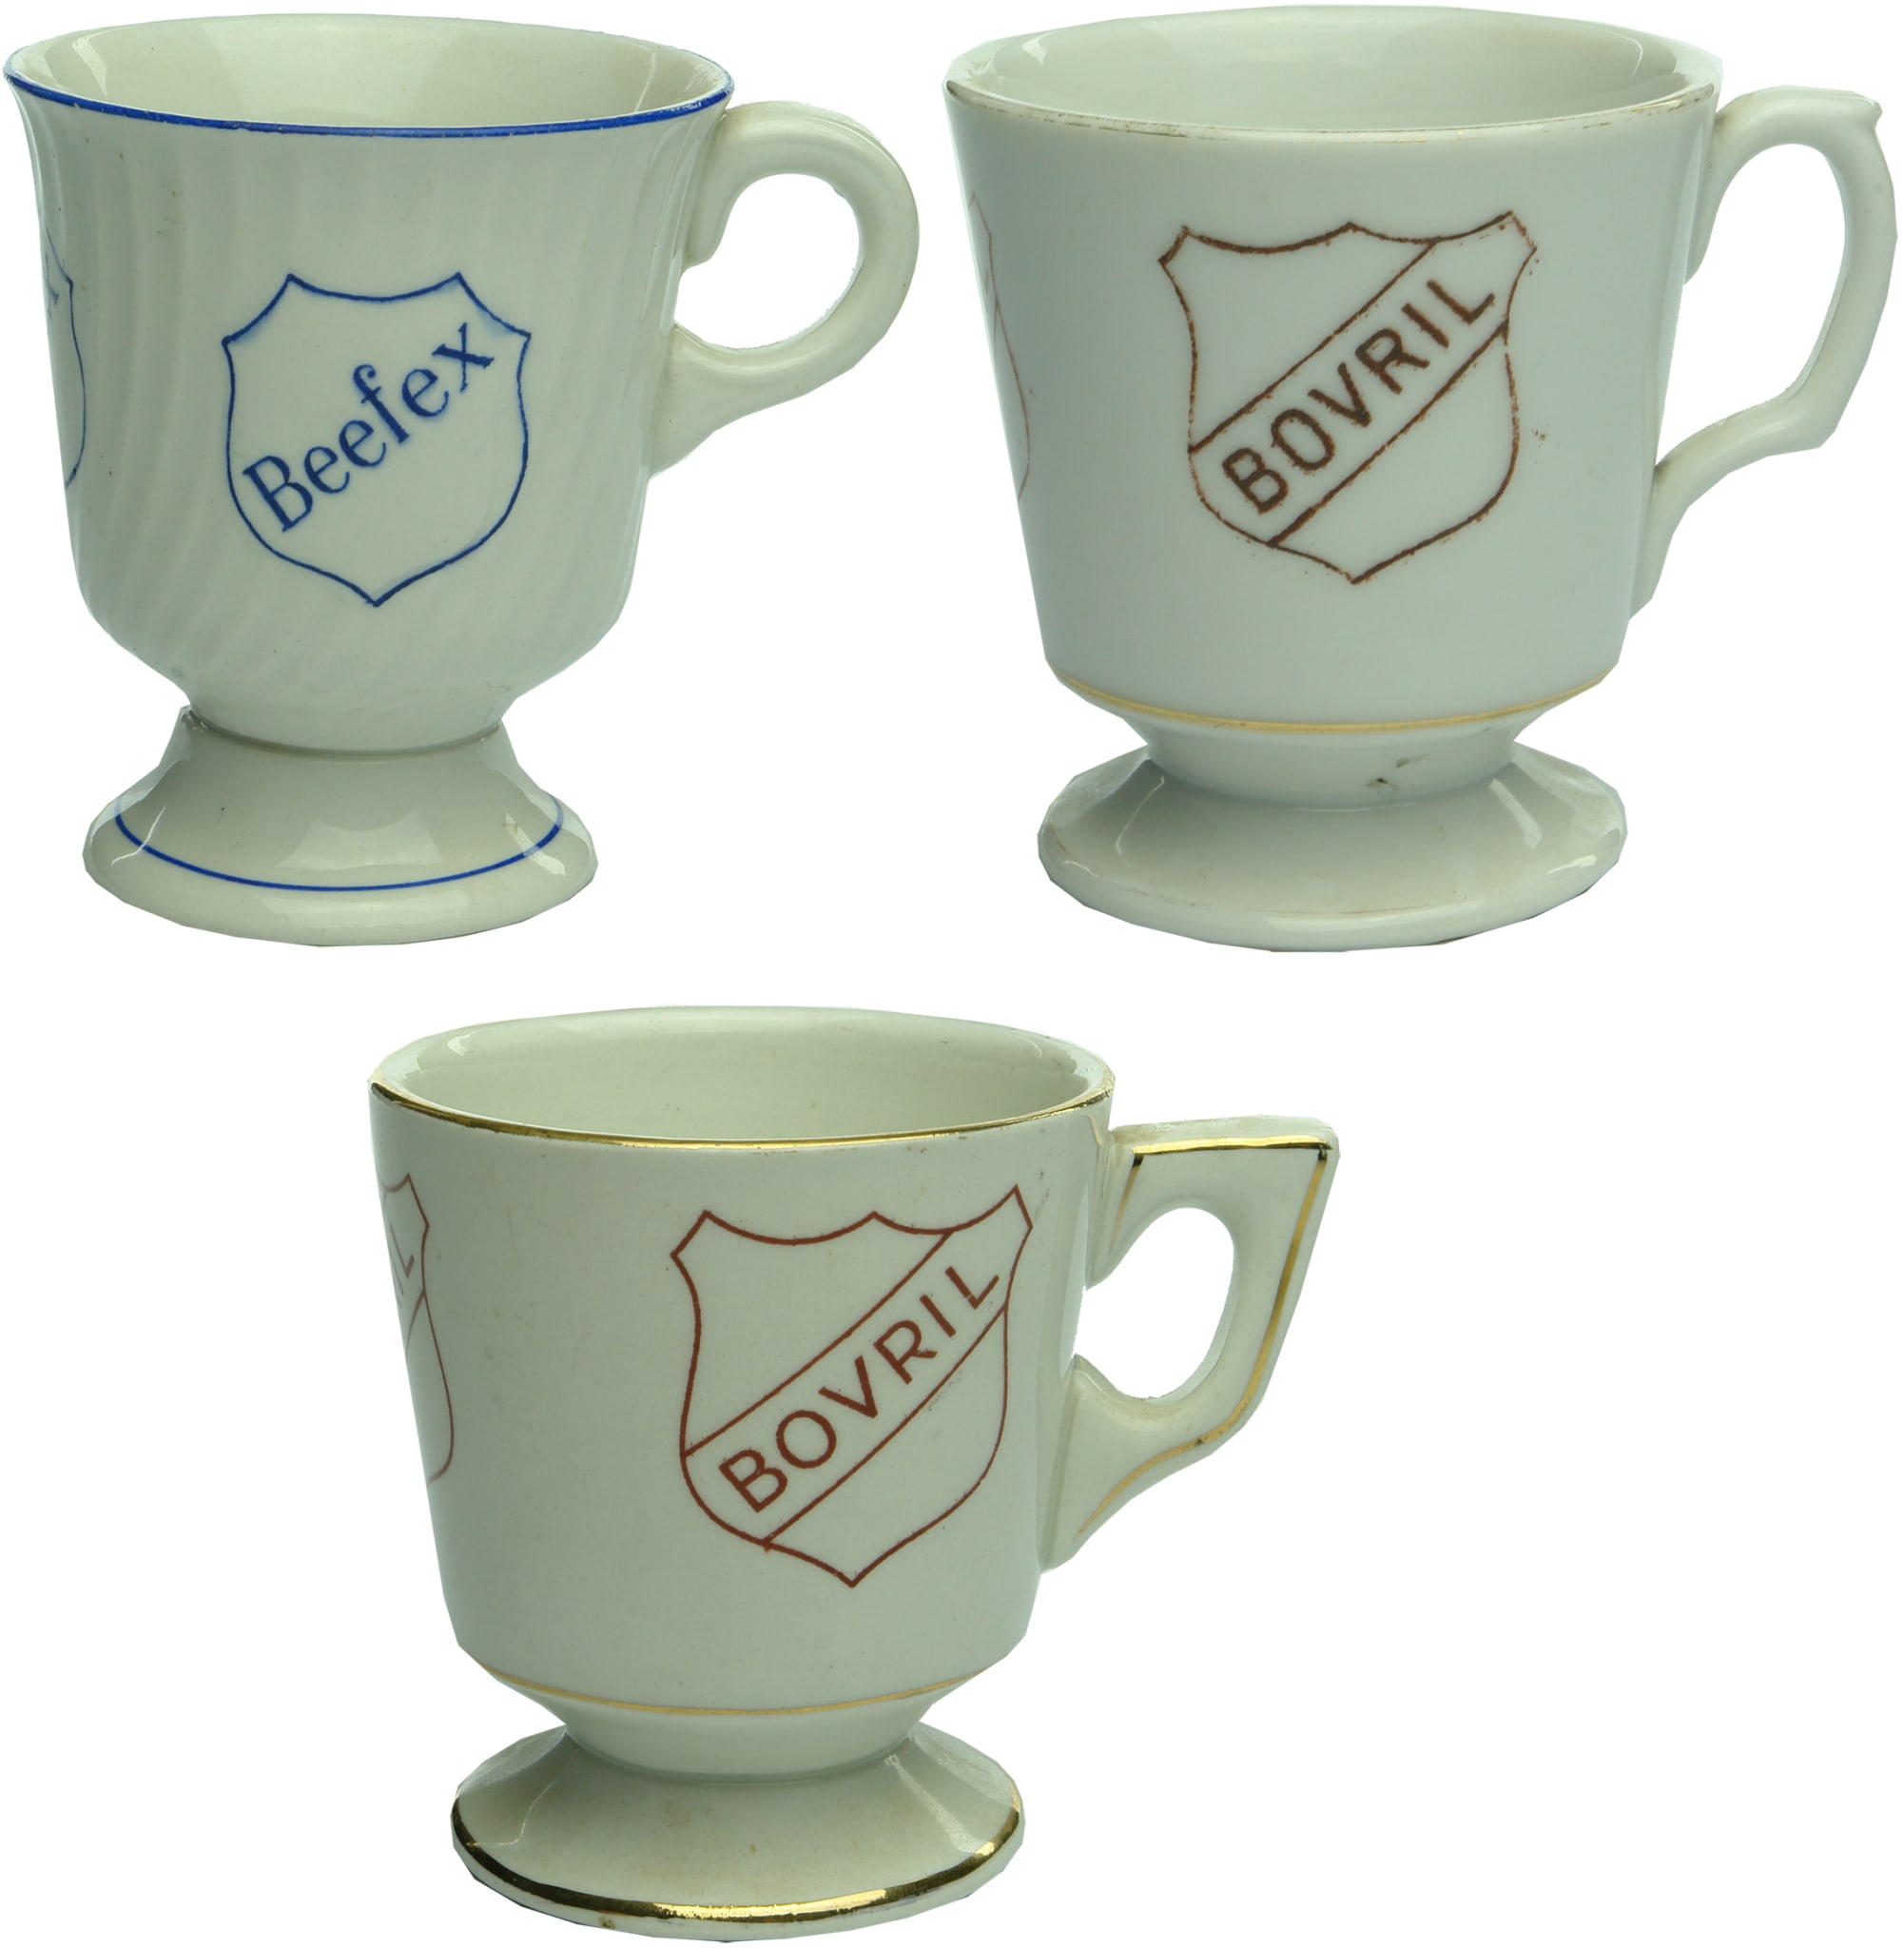 Beefex Bovril Advertising Ceramic Mugs